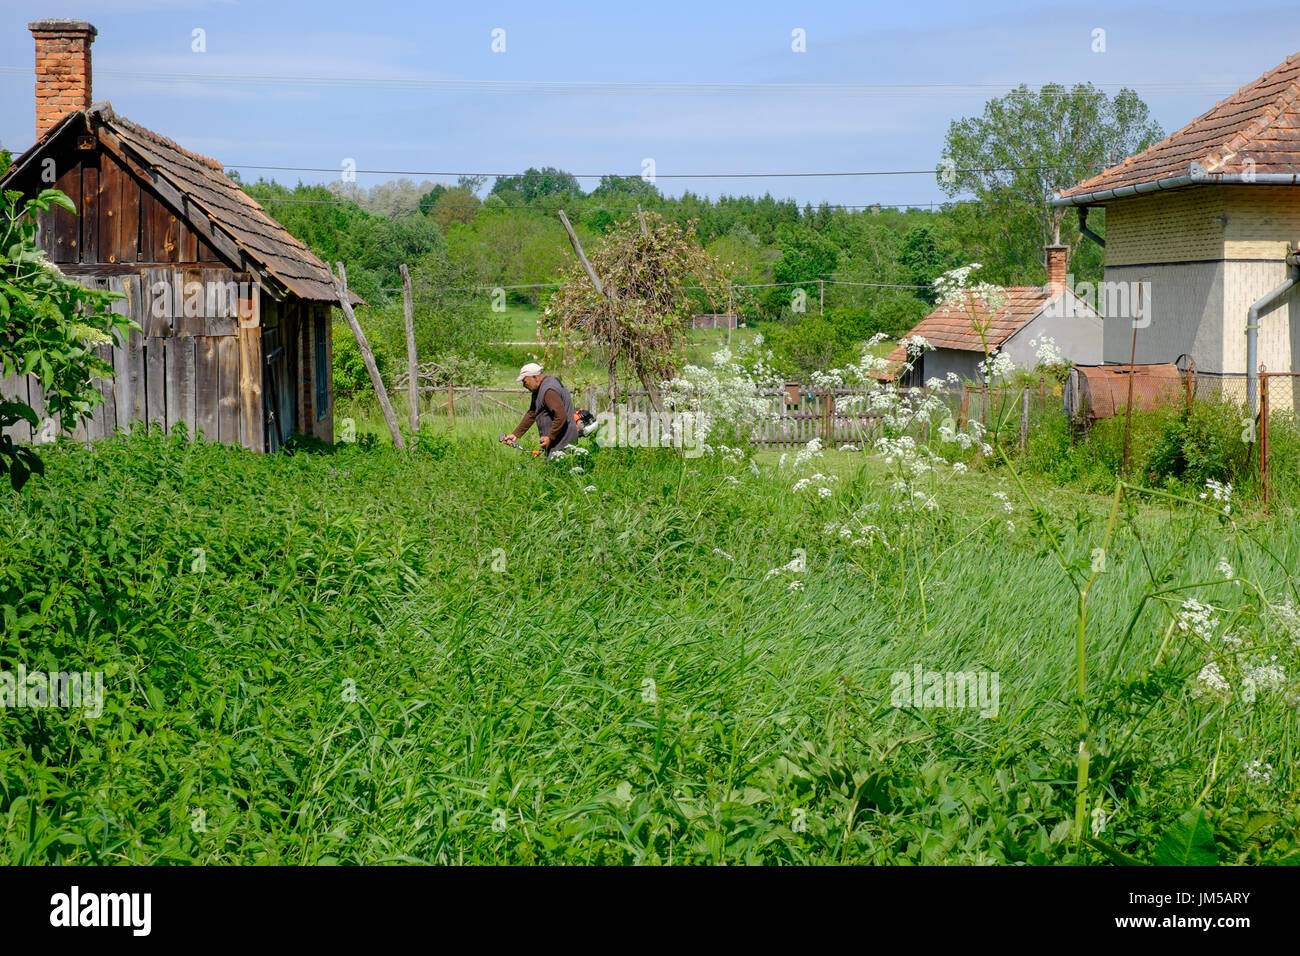 Uomo locale utilizzando un decespugliatore per il taglio di erba lunga nel giardino di una casa rurale in un villaggio in Zala county Ungheria Foto Stock